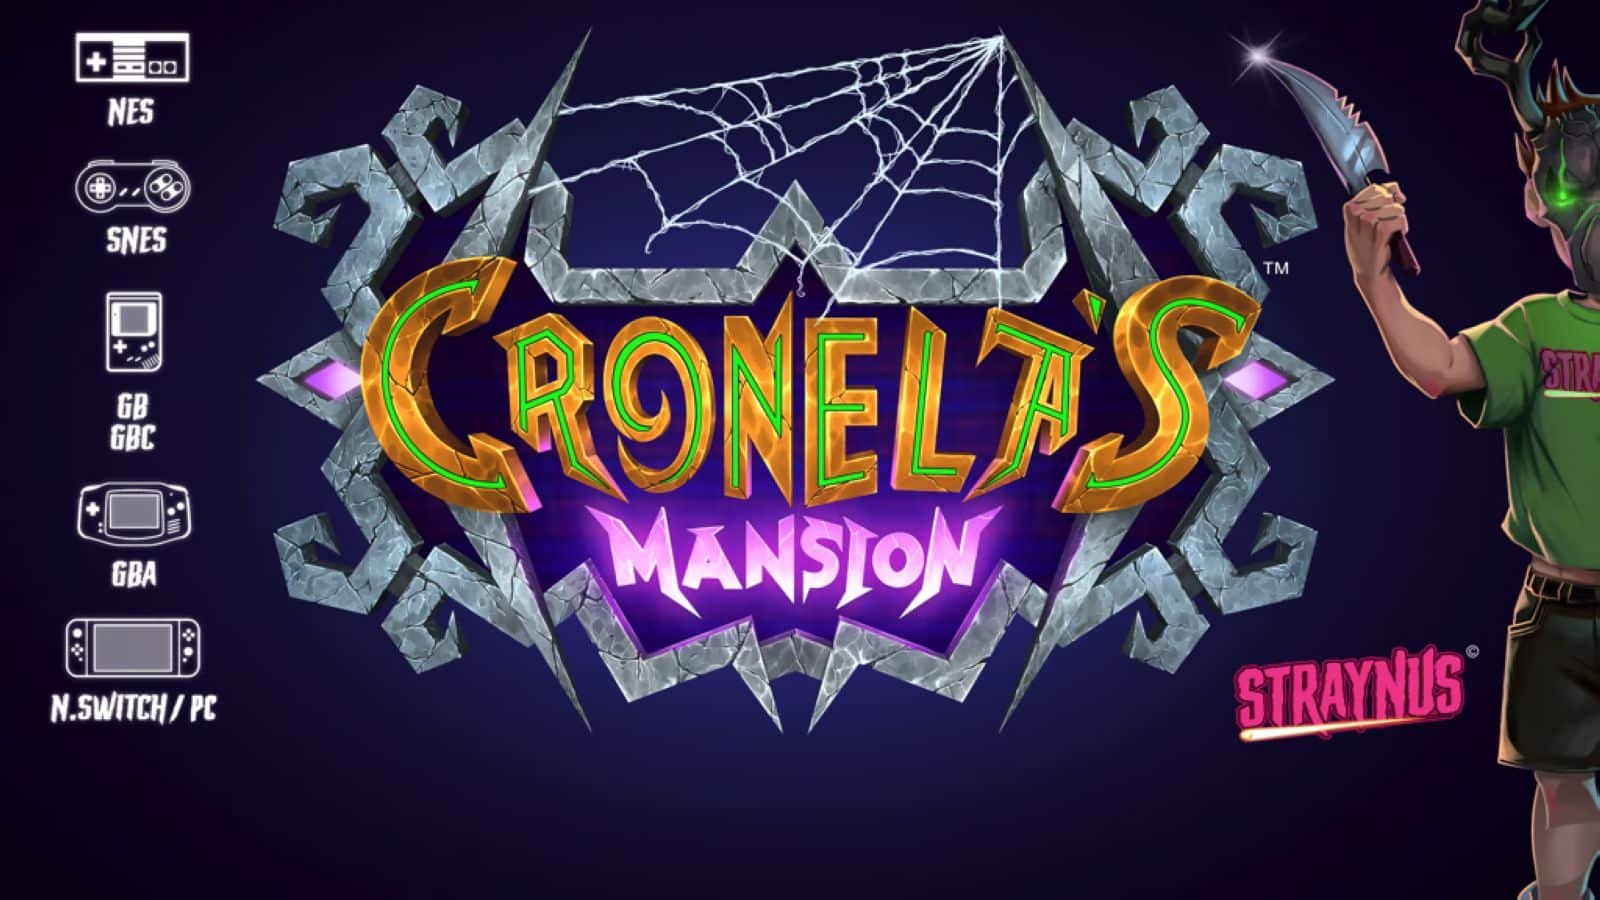 Cronela’s Mansion : le jeu sortira en 2025 sur Nes, Super Nes, GameBoy et Nintendo Switch